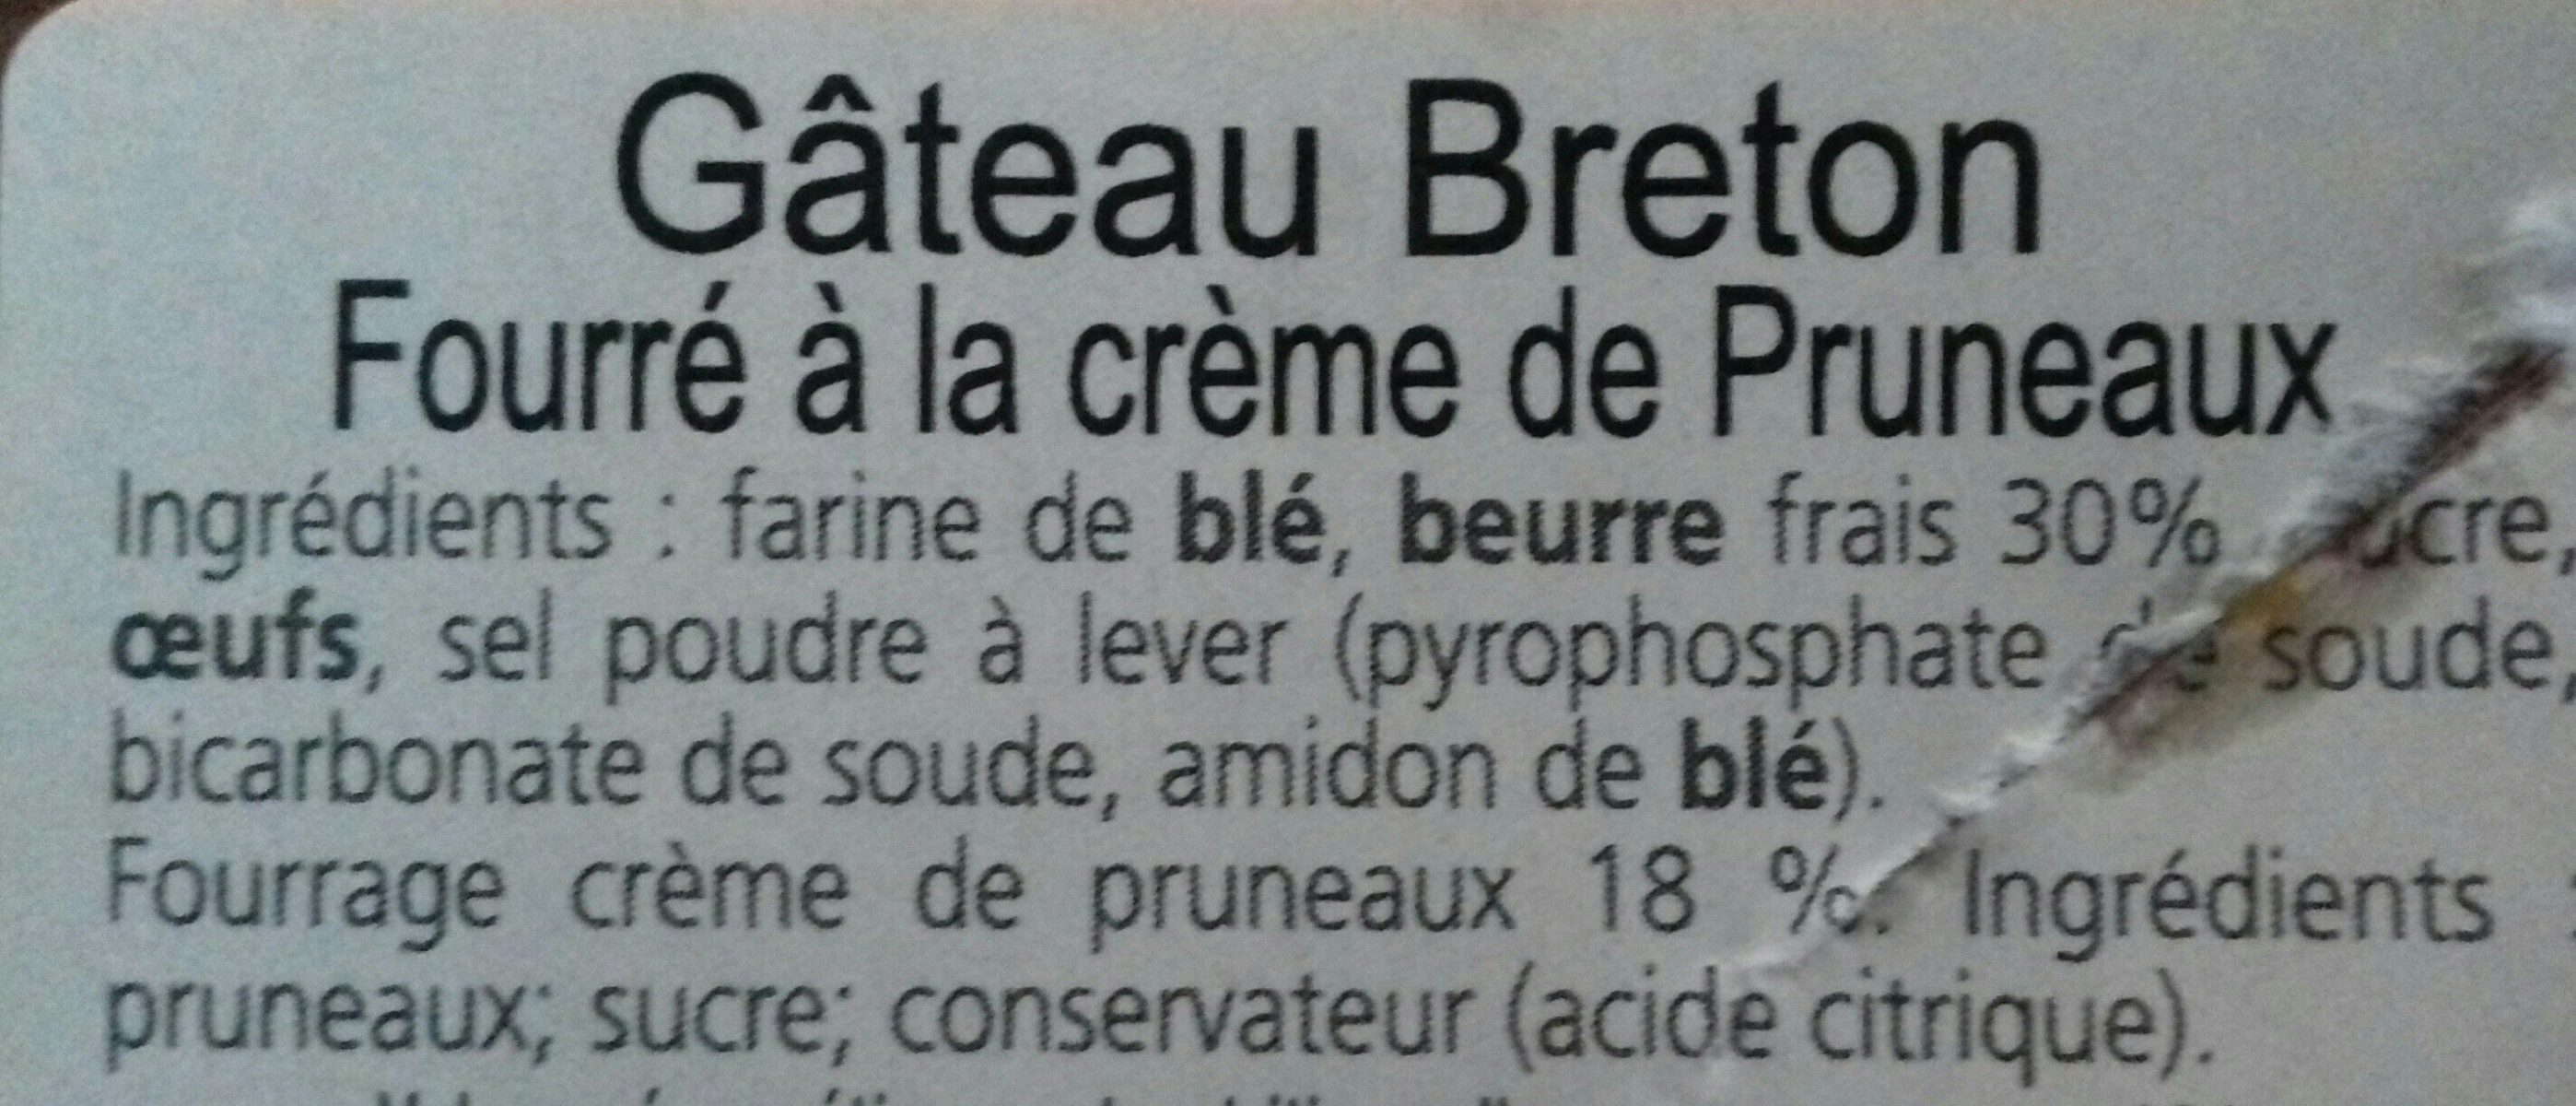 Gateau breton fourré à la crème de pruneaux - Ingrédients